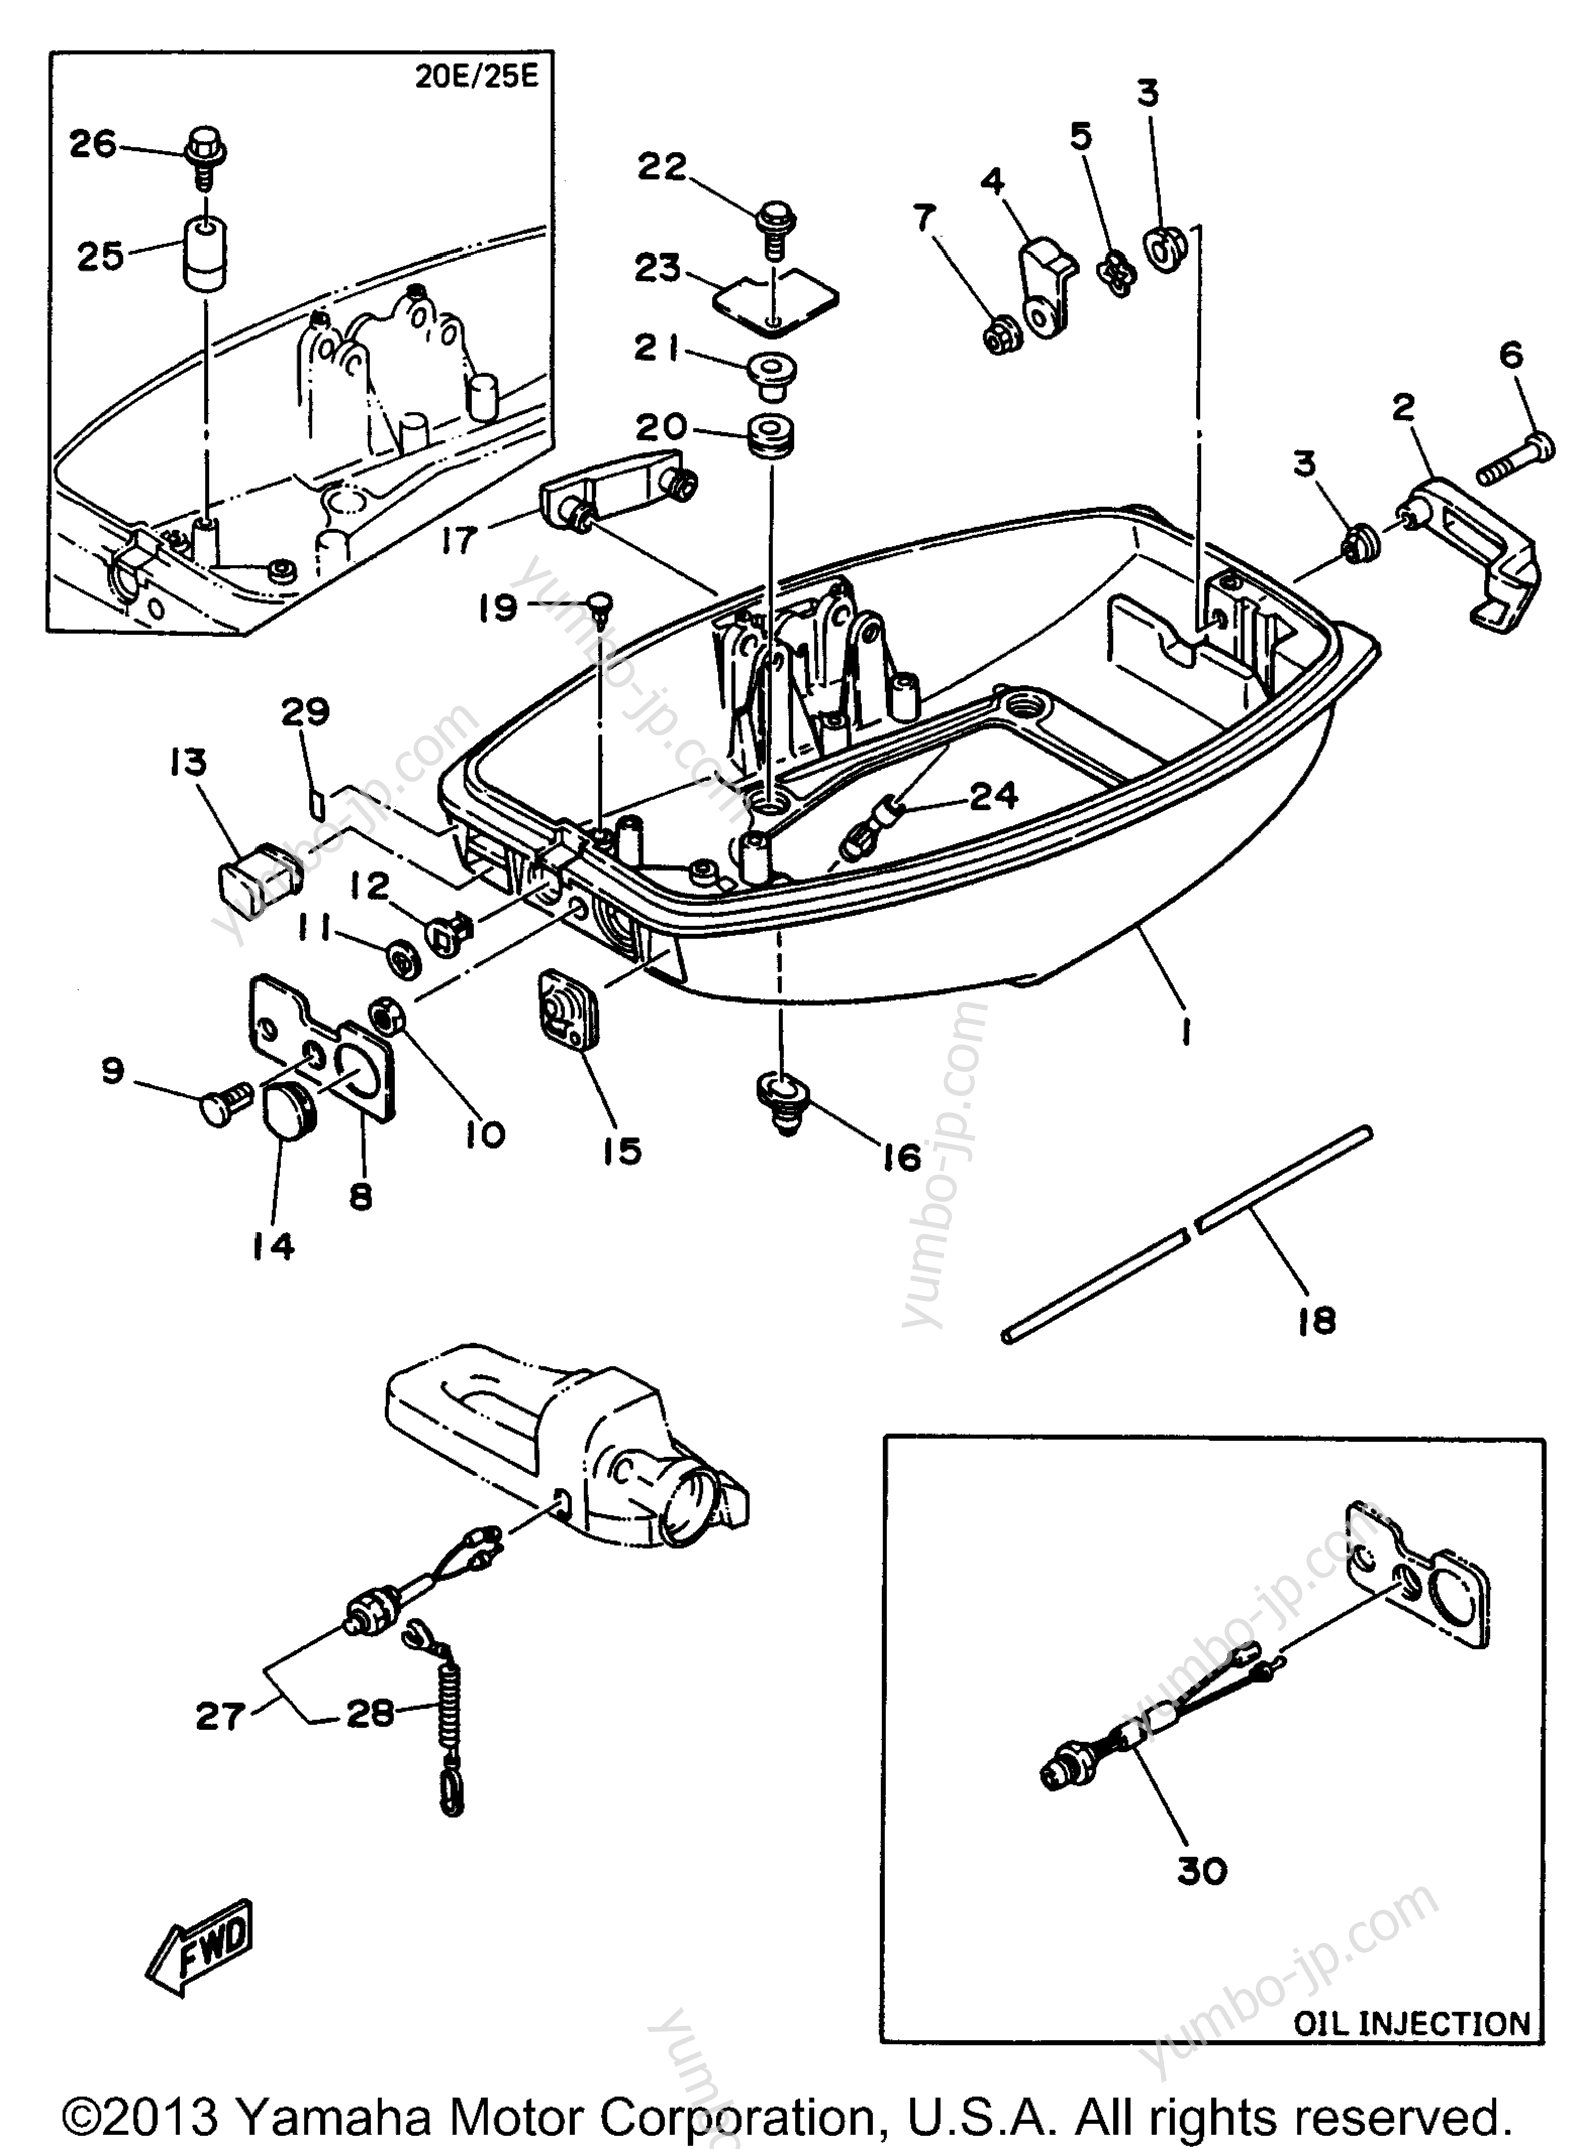 Bottom Cowling для лодочных моторов YAMAHA 25ESHU 1996 г.